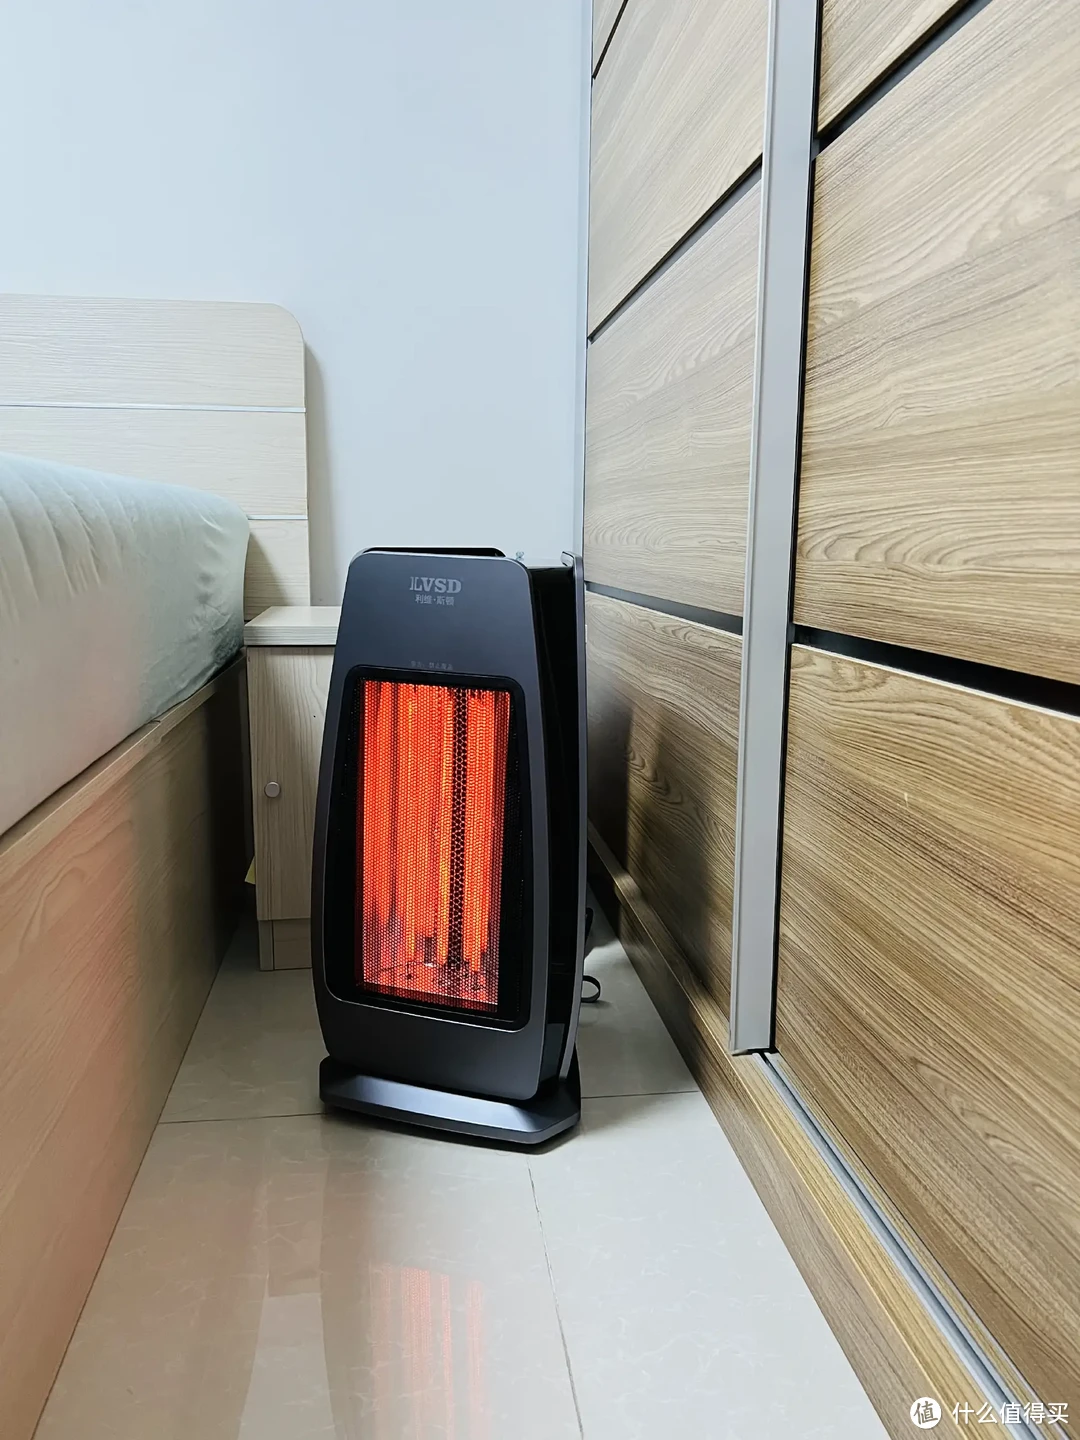 高效节能、安全环保的利维斯顿石墨烯外红外取暖器实际评测体验